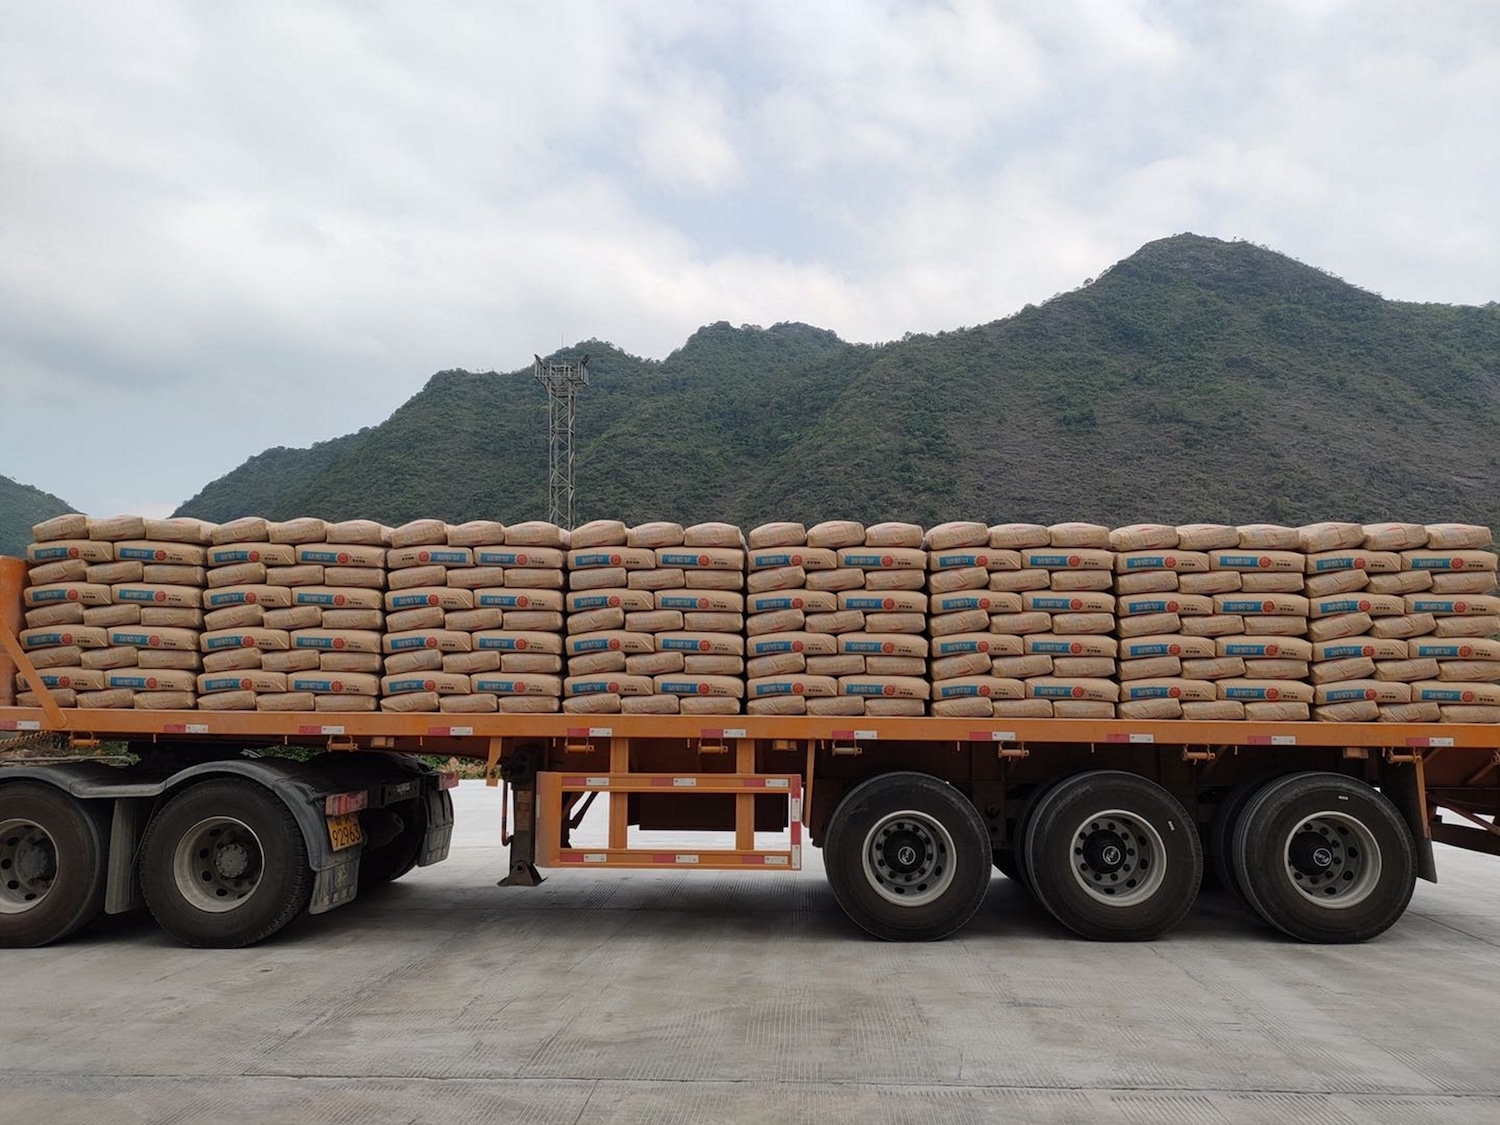 水泥制造商INSEE越南委托BEUMER集团提供全自动卡车装载系统